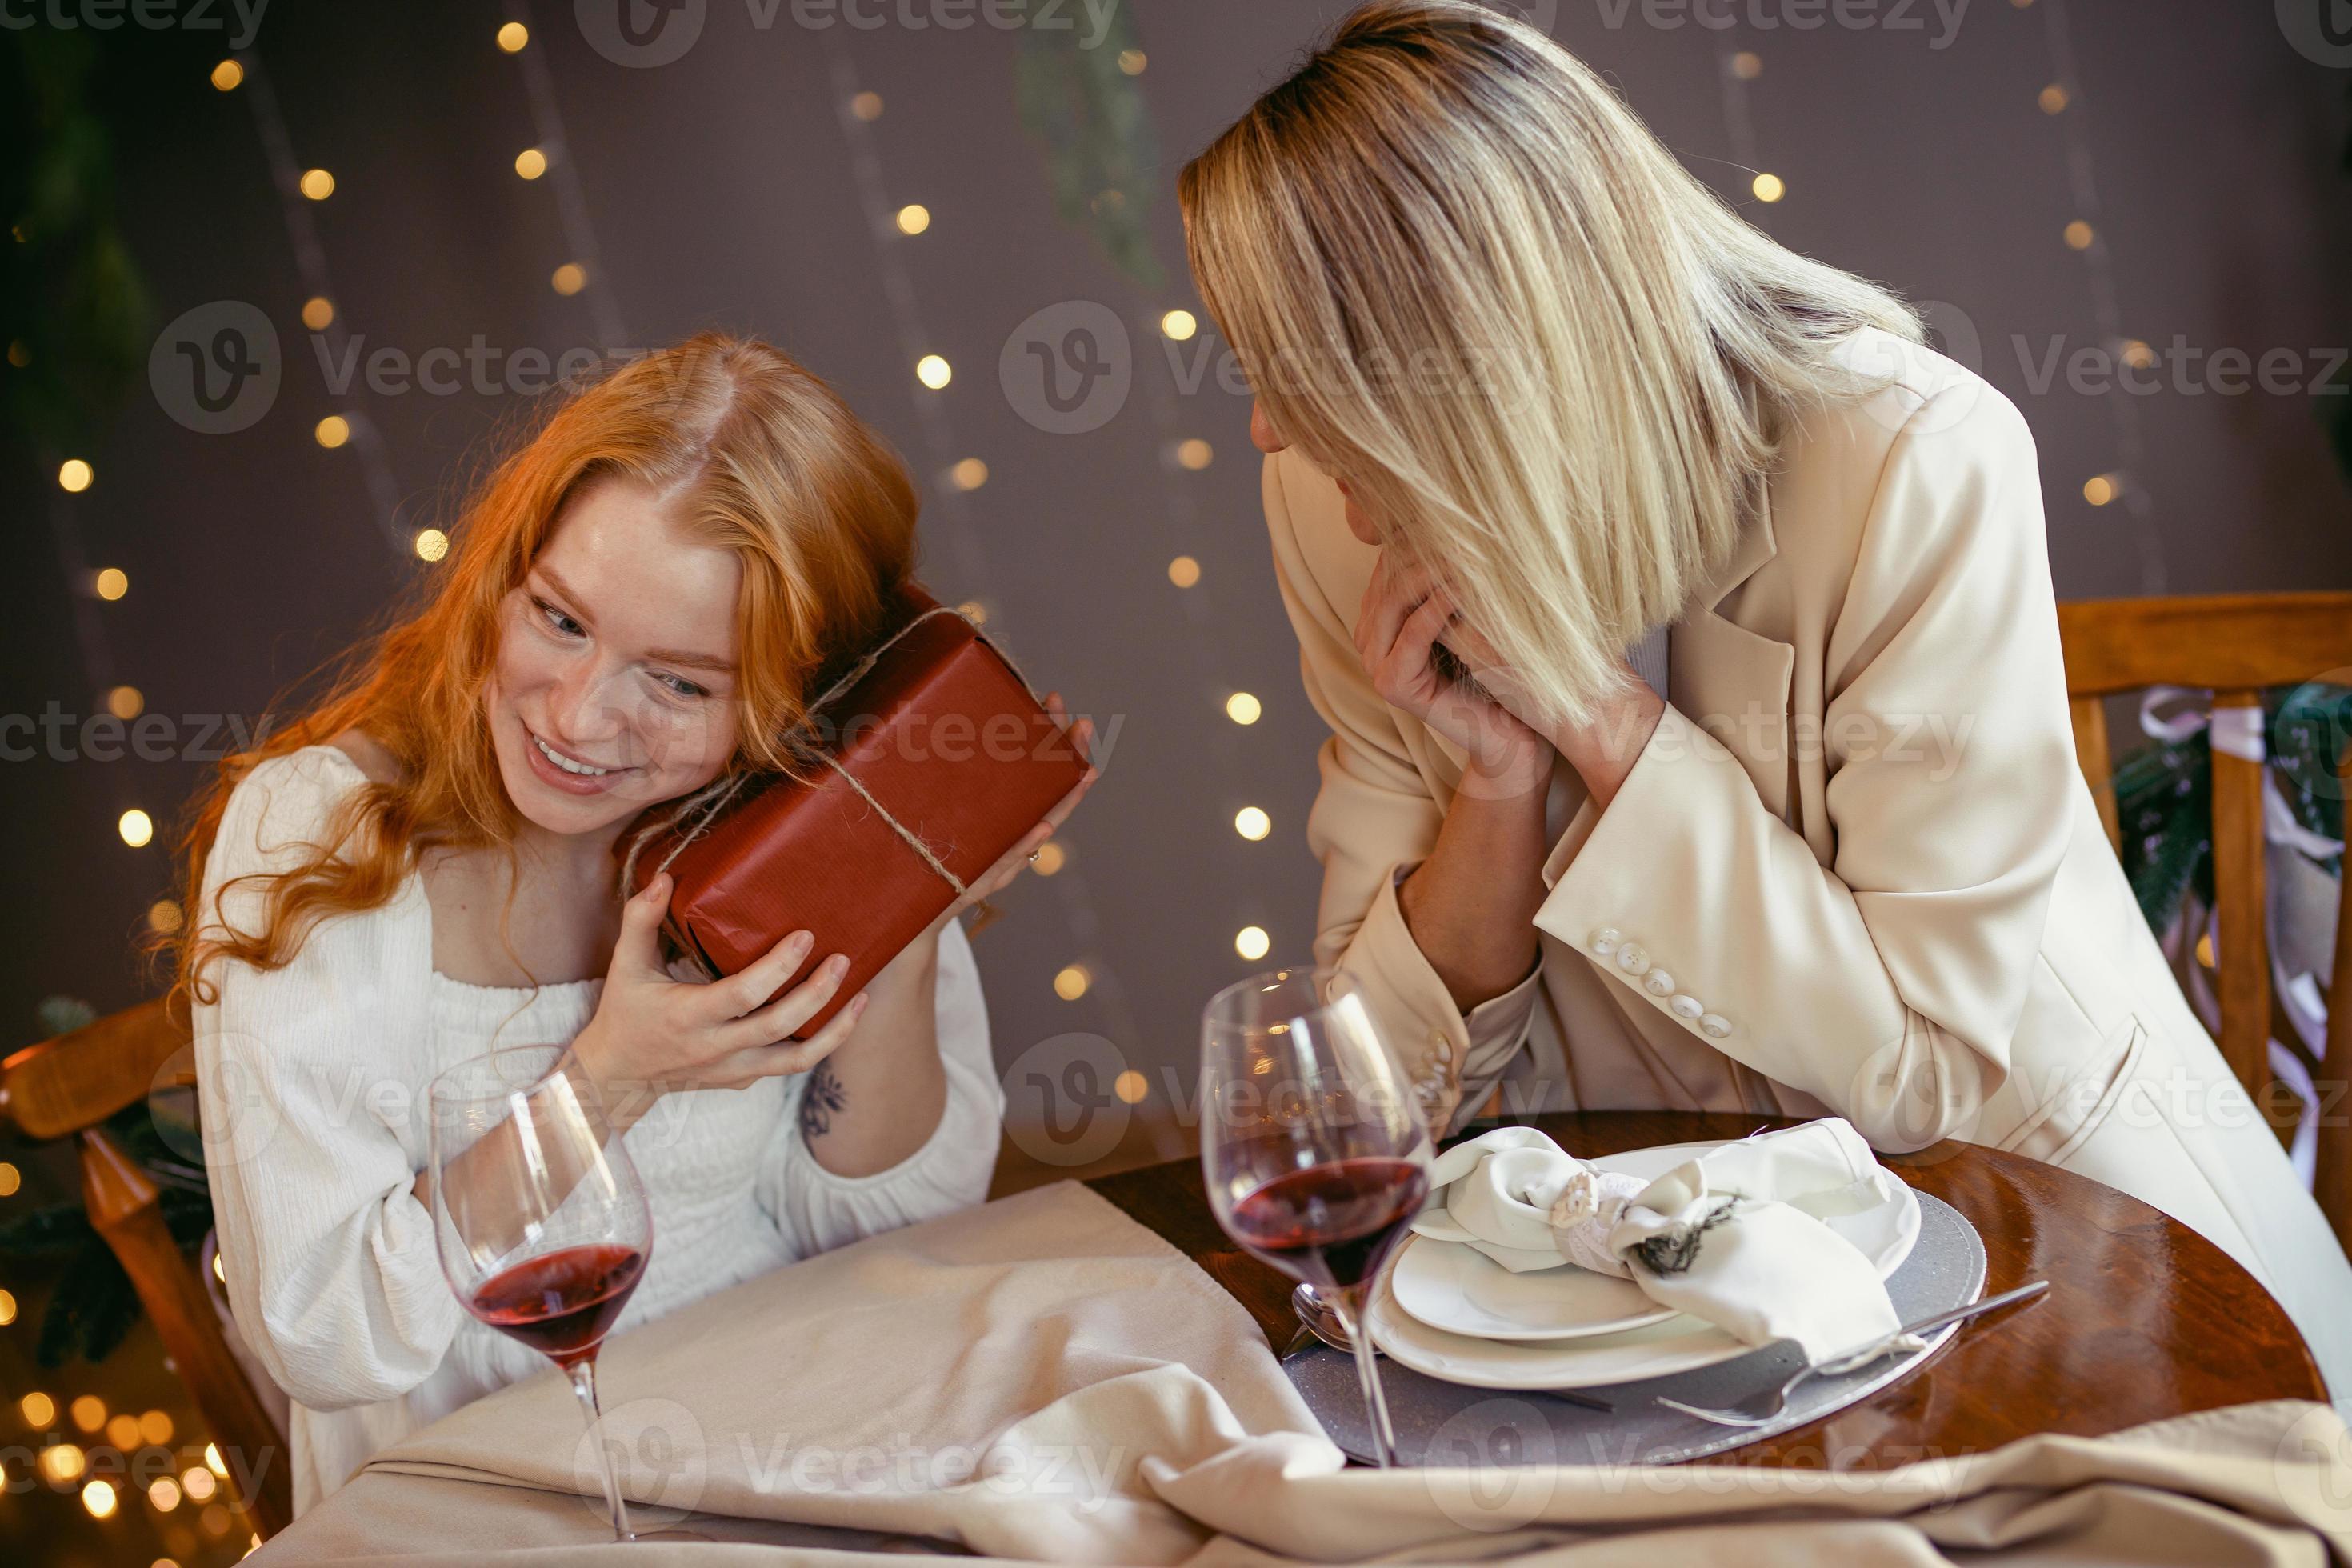 Plantage schapen Maxim lesbisch koppel aan het eten in een restaurant. meisje geeft een cadeau aan  haar geliefde 4951116 stockfoto bij Vecteezy